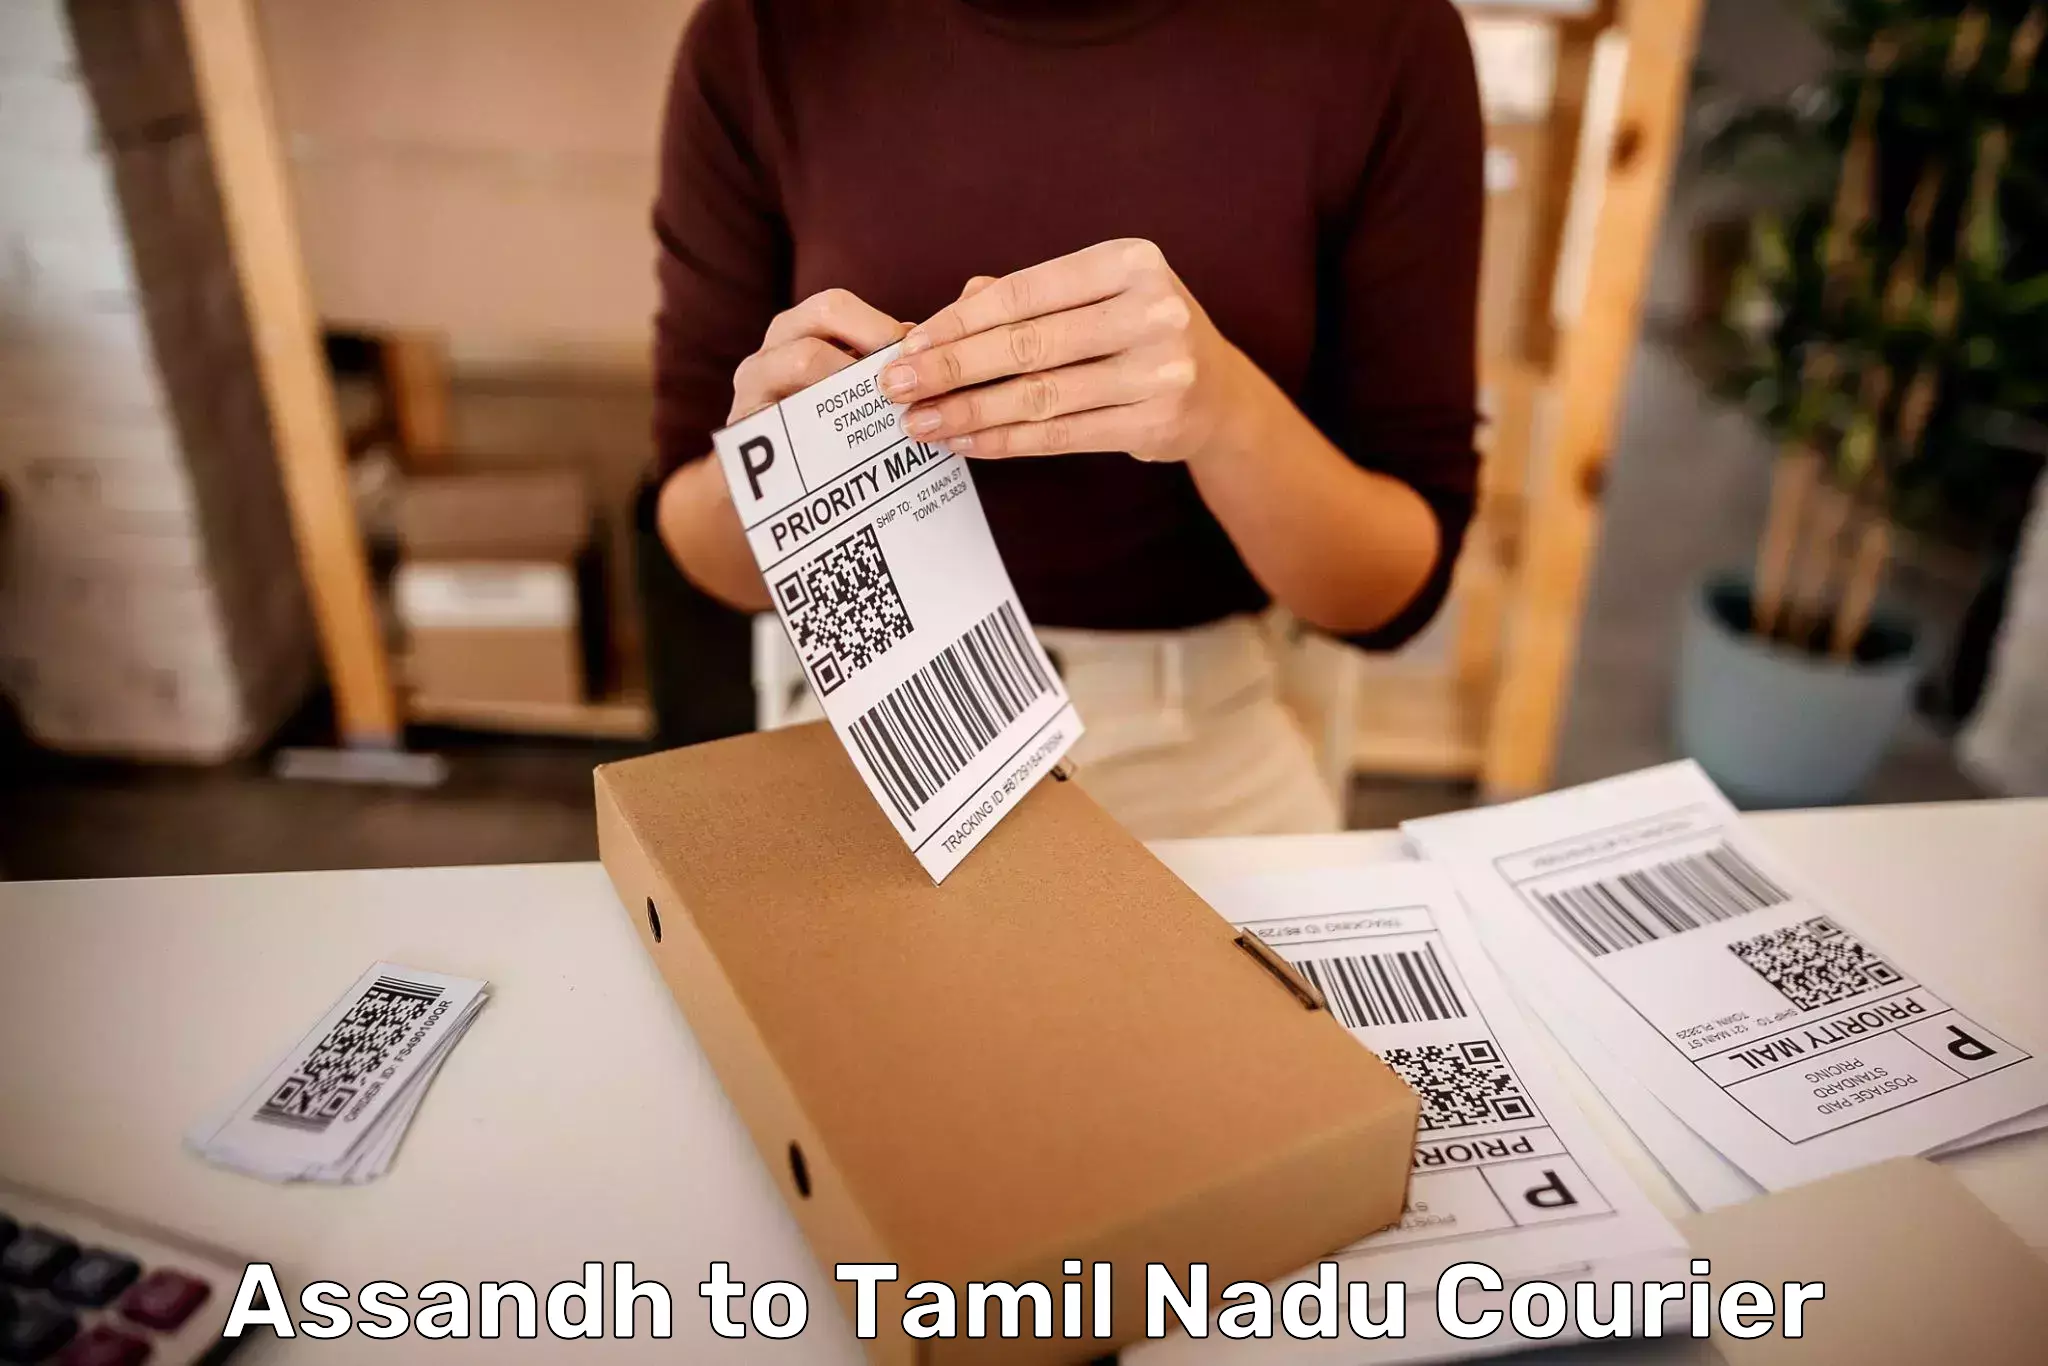 Baggage transport scheduler Assandh to Tamil Nadu